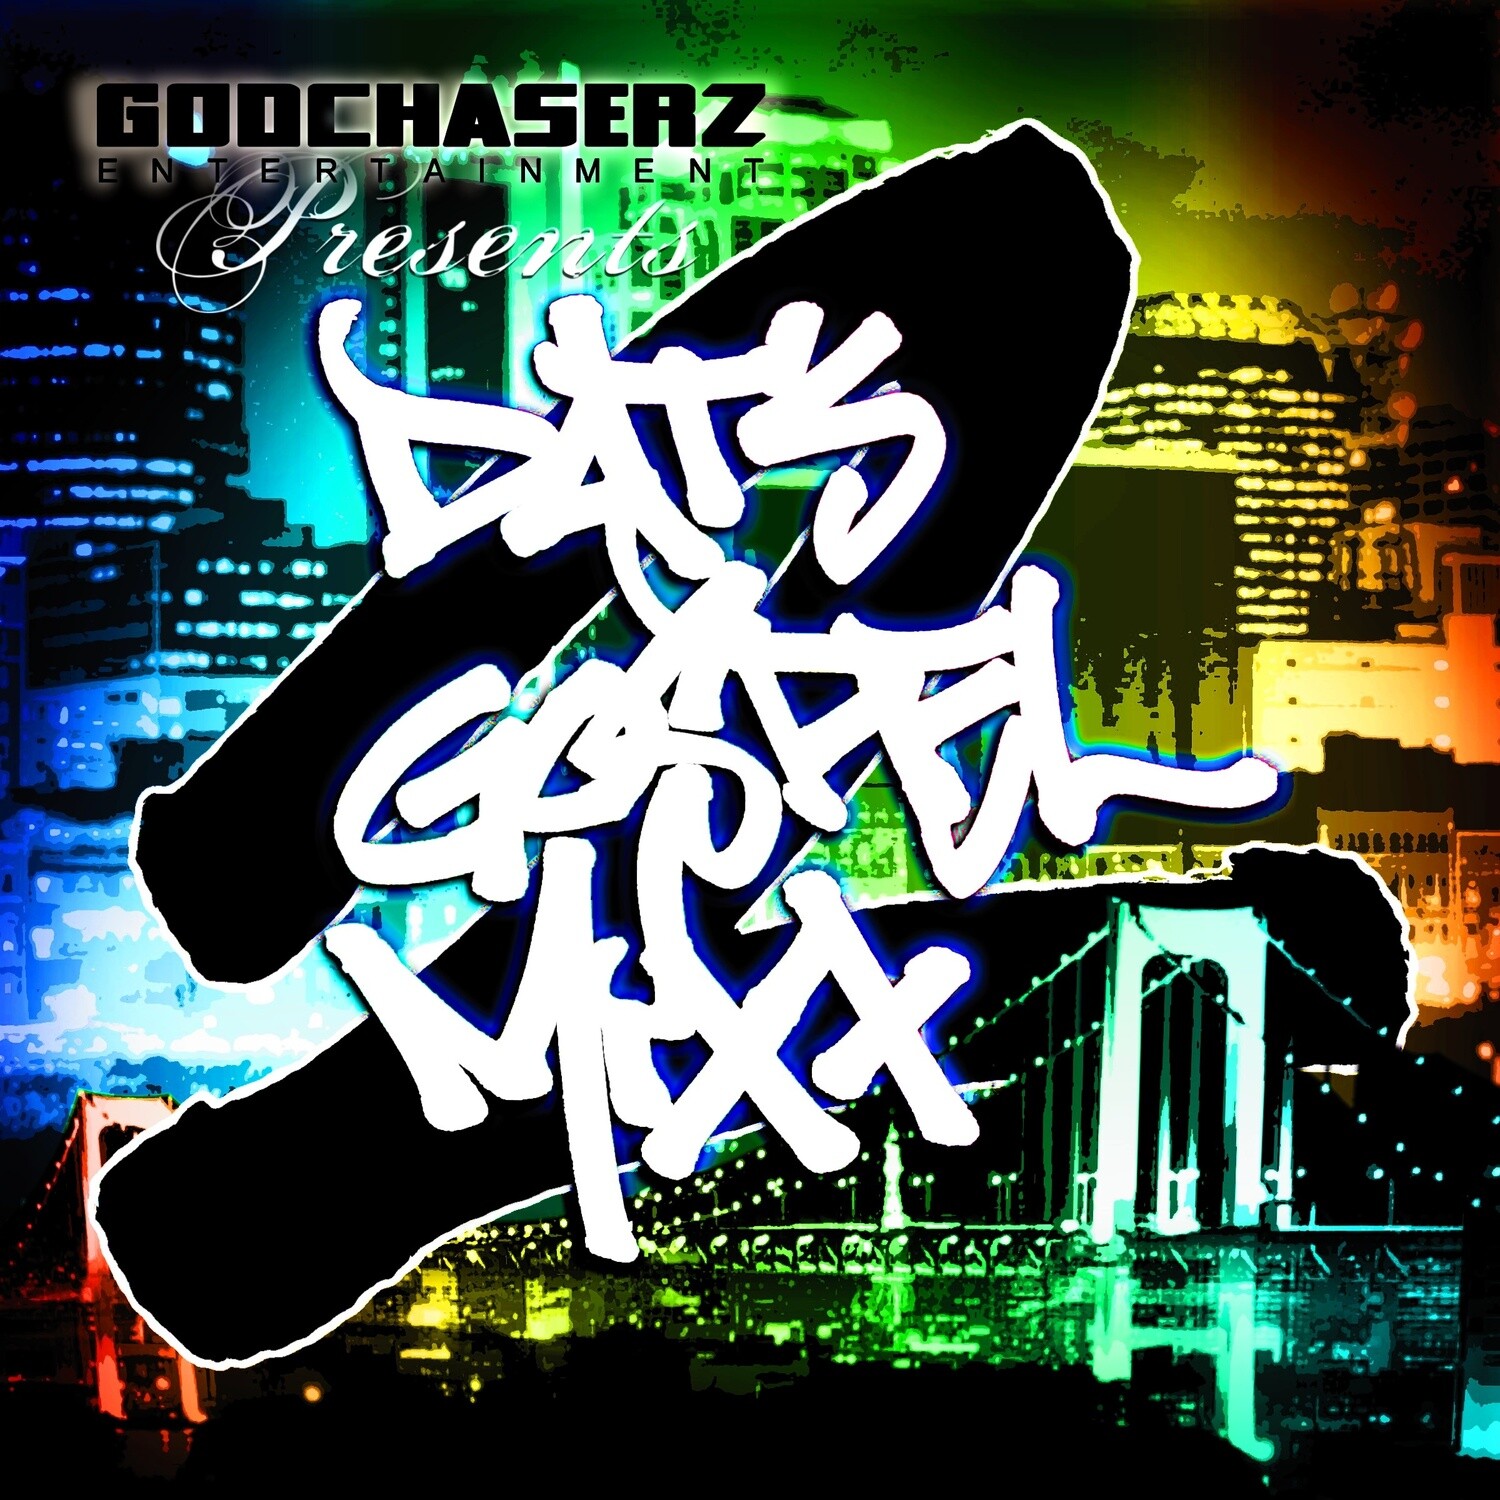 "Dat's Gospel Mixx 2" digital download